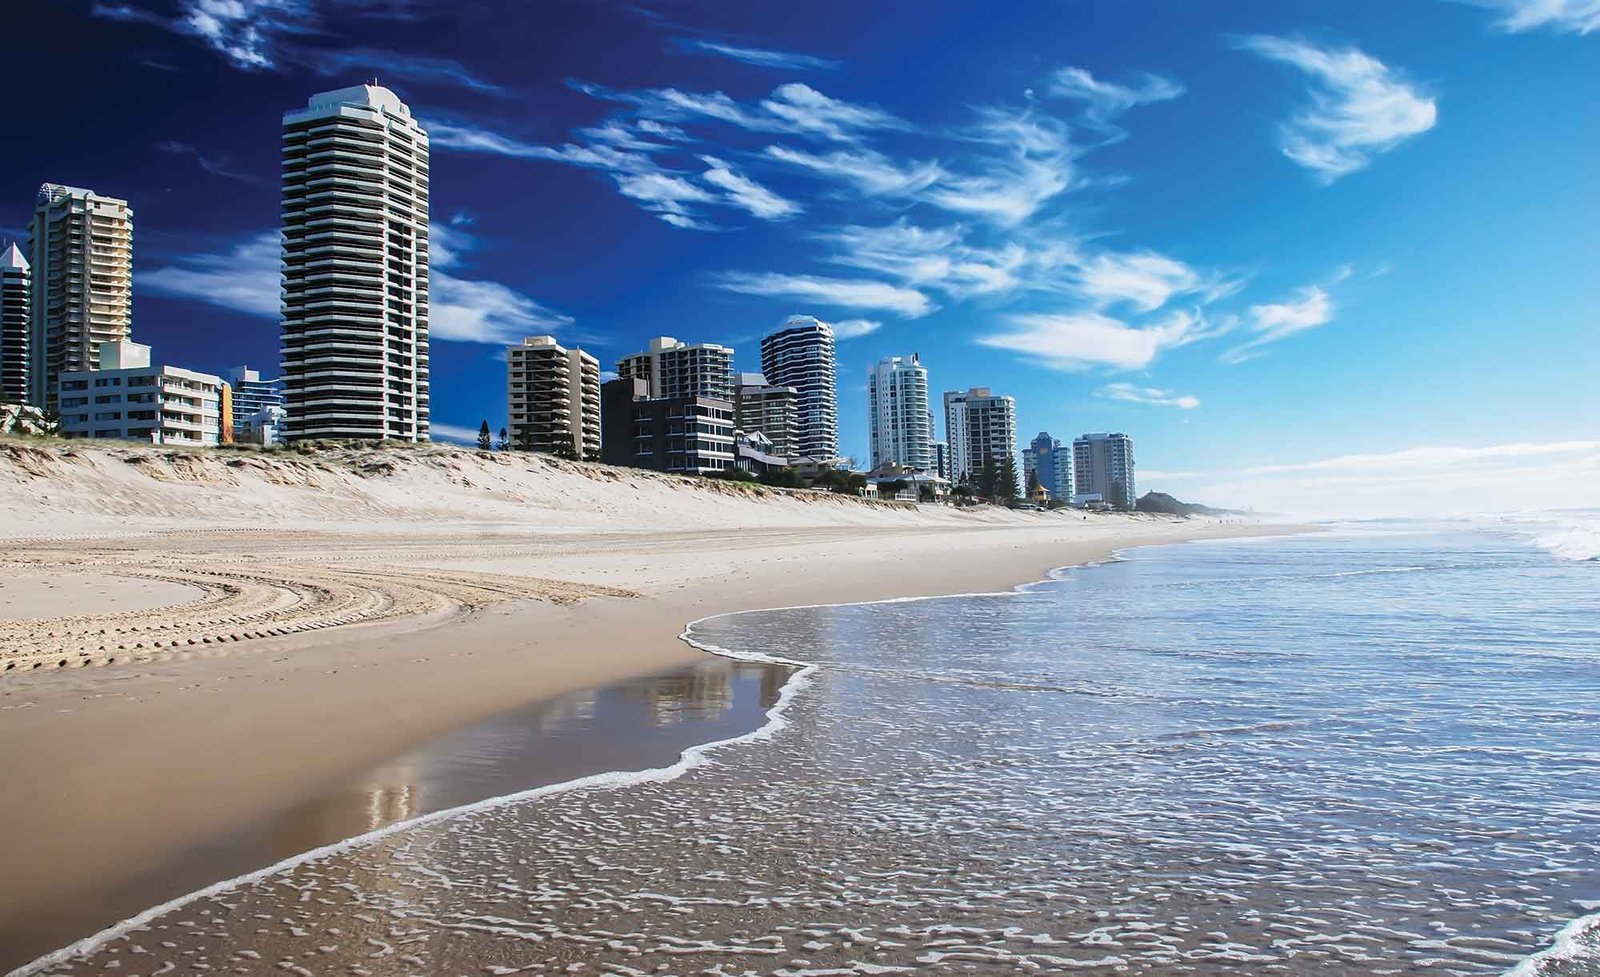 Australia BEACHES – Most visit places